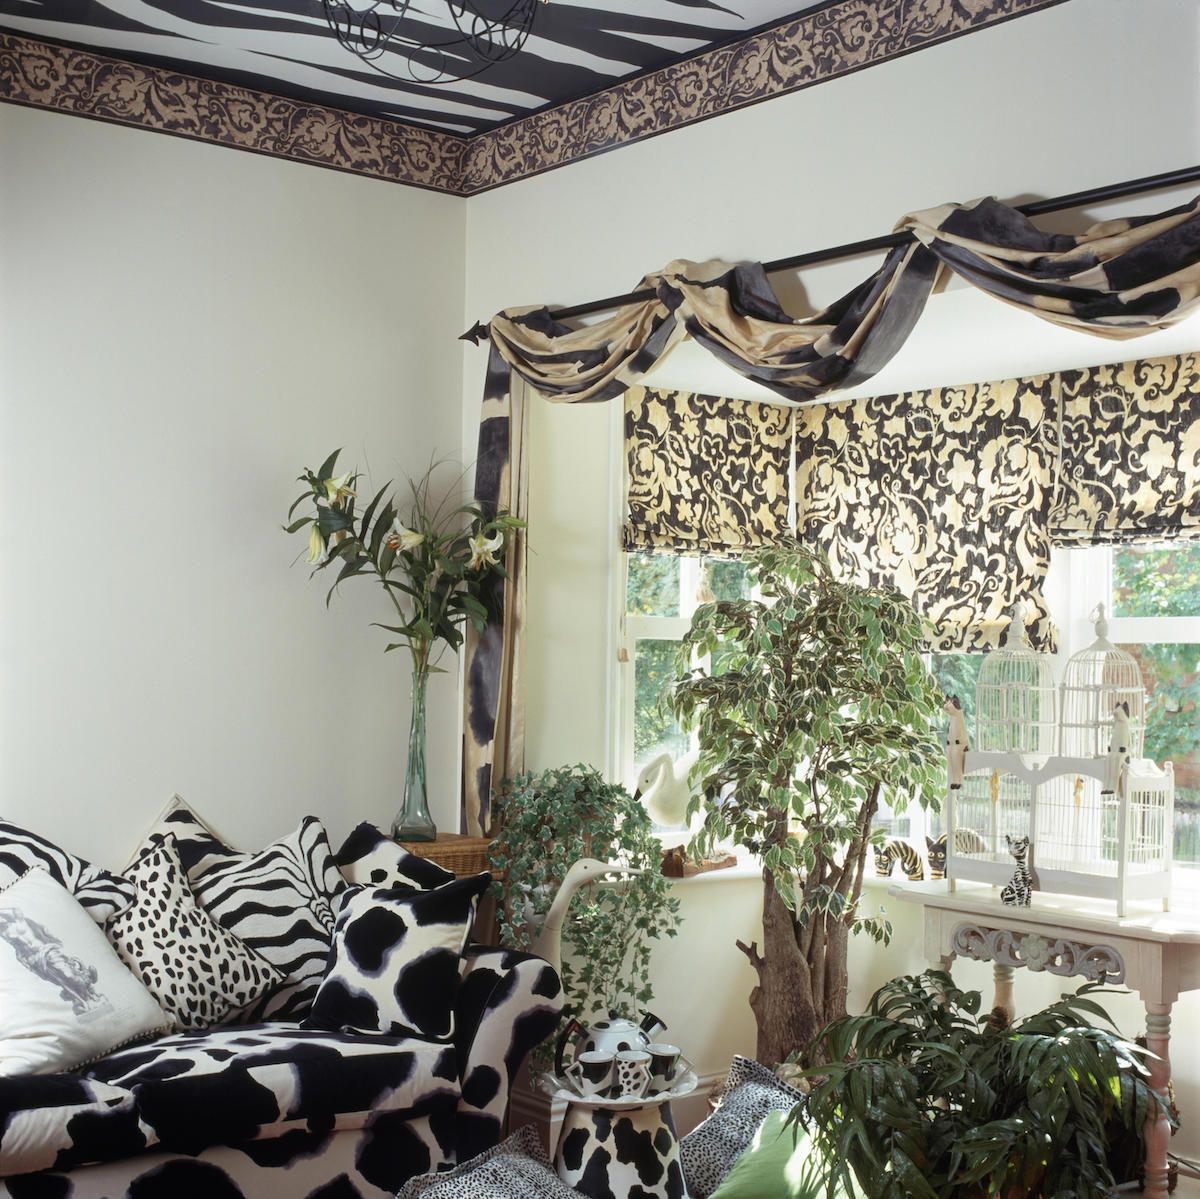 Musta + valkoinen eläinkuvioitu sohva ja tyynyt 90-luvun olohuoneessa, verhoiltu kangas pylväässä ikkunan yläpuolella